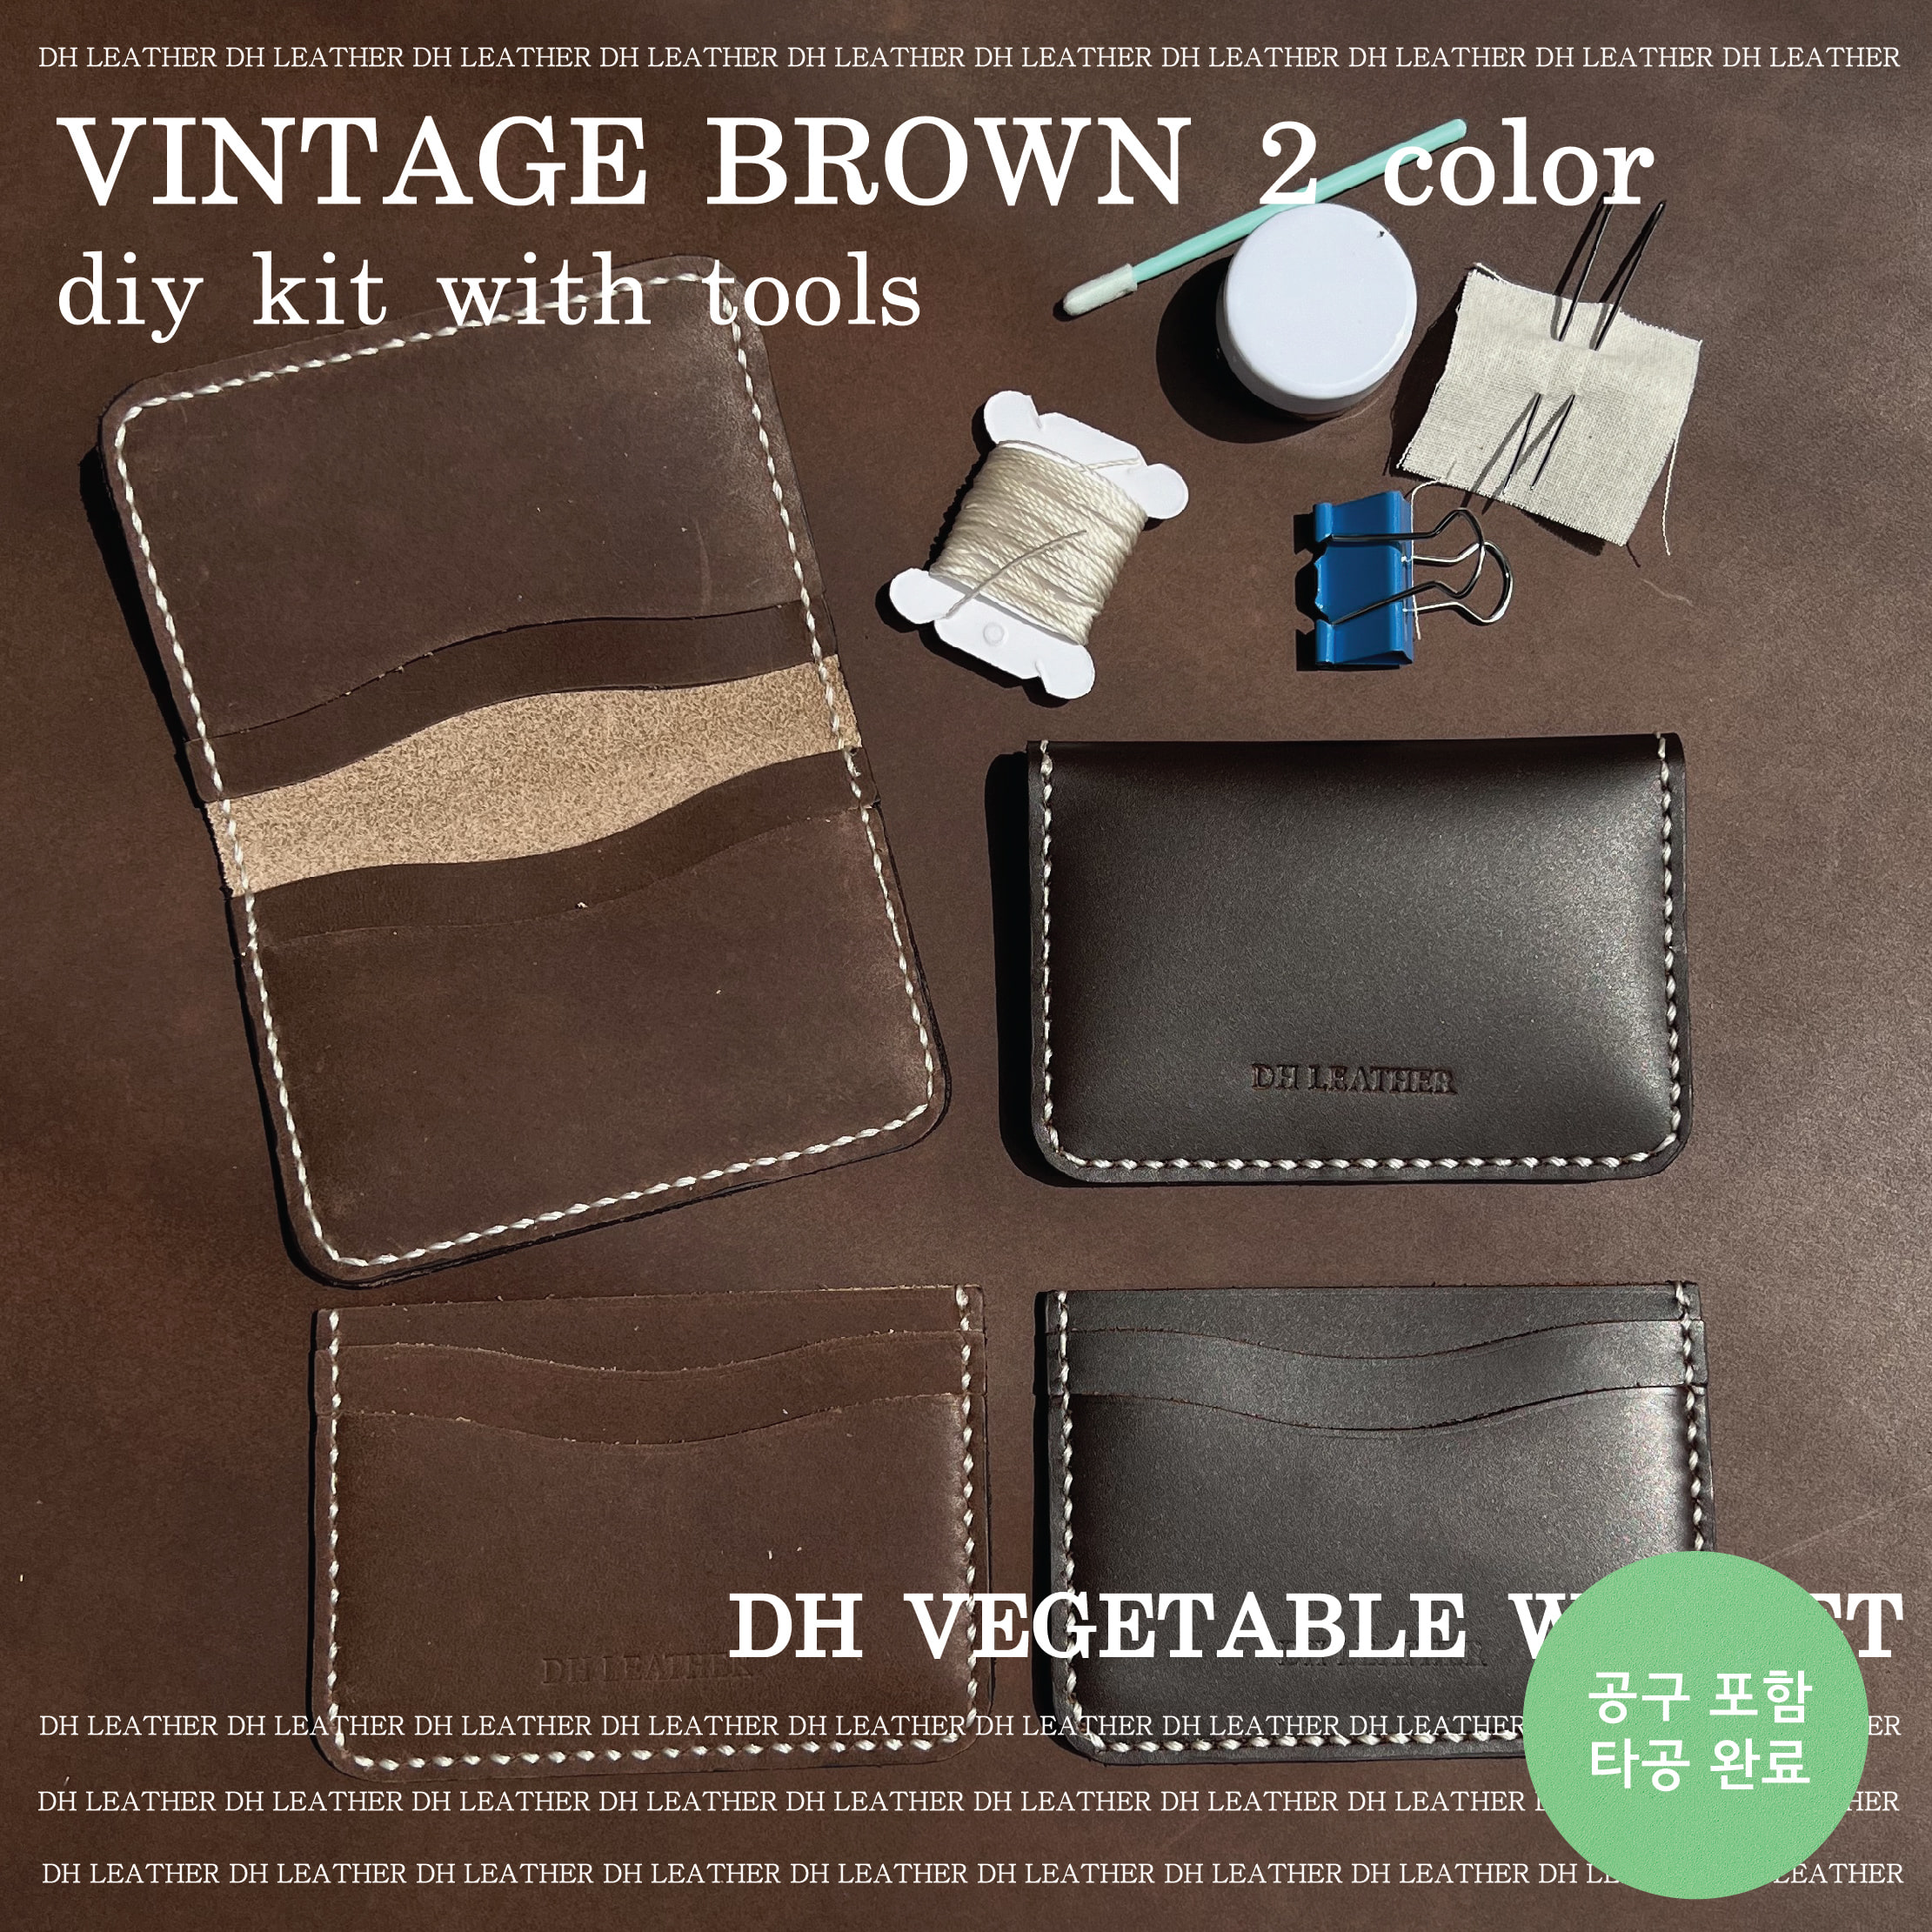 공구포함 폴딩/포켓 카드지갑 DIY KIT - 빈티지 브라운 2종 standard